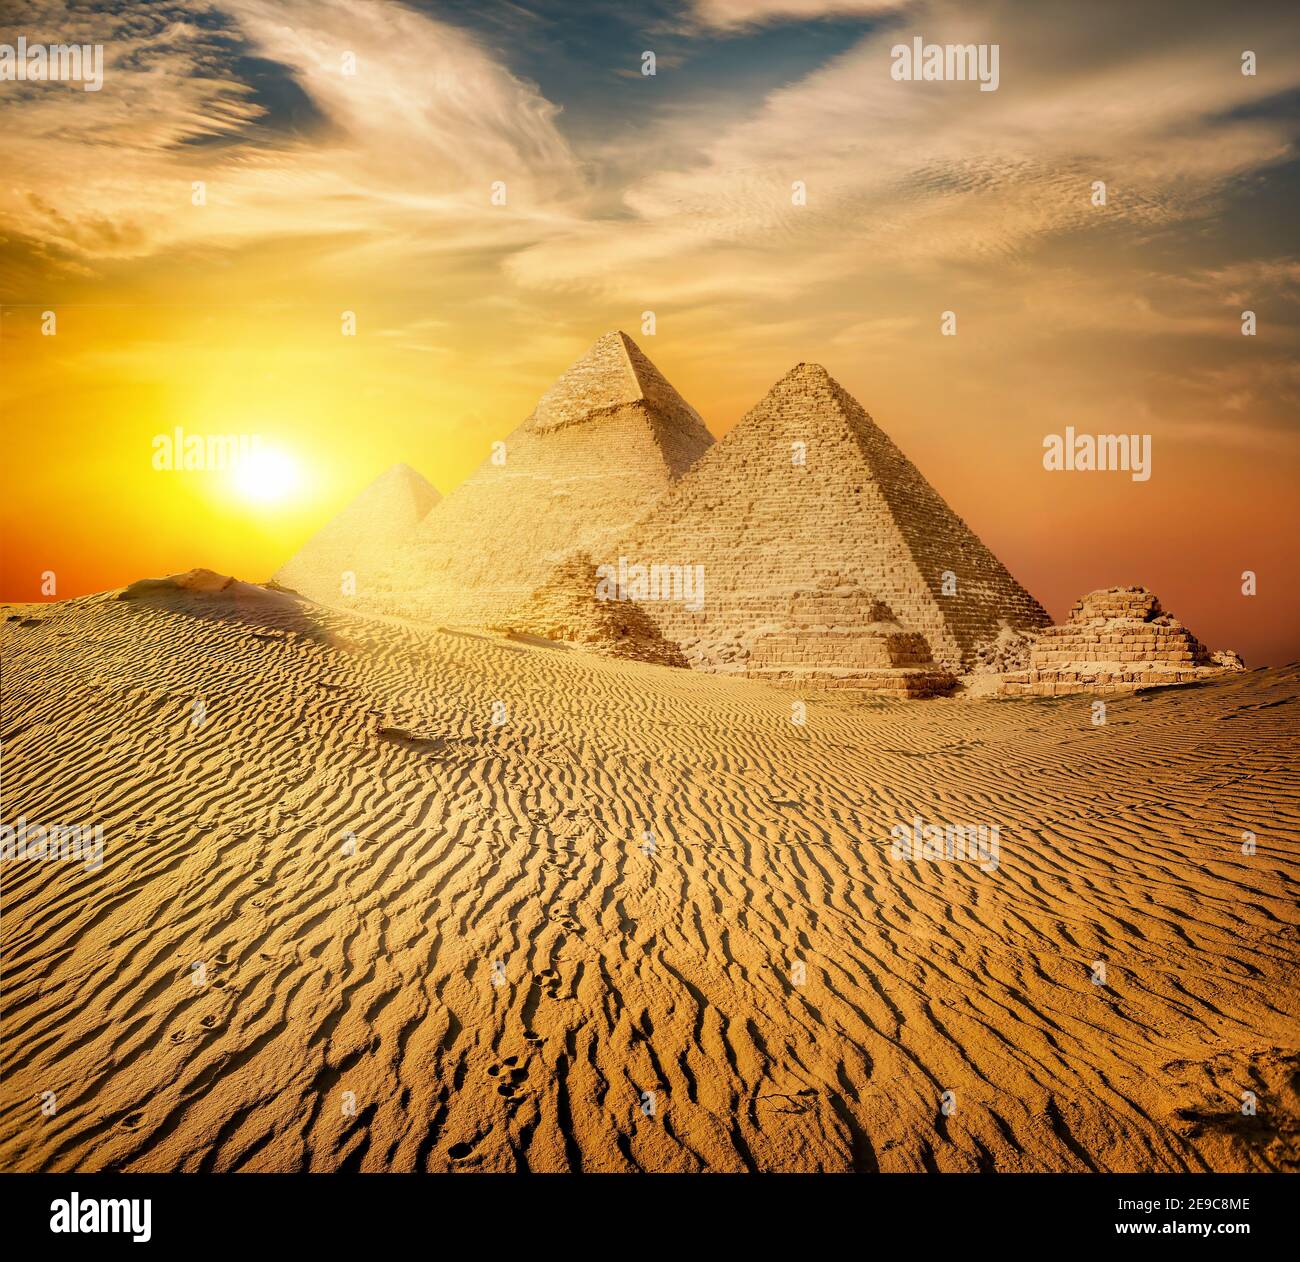 Pirámide Egipcia en un desierto de arena y el cielo claro. Foto de stock